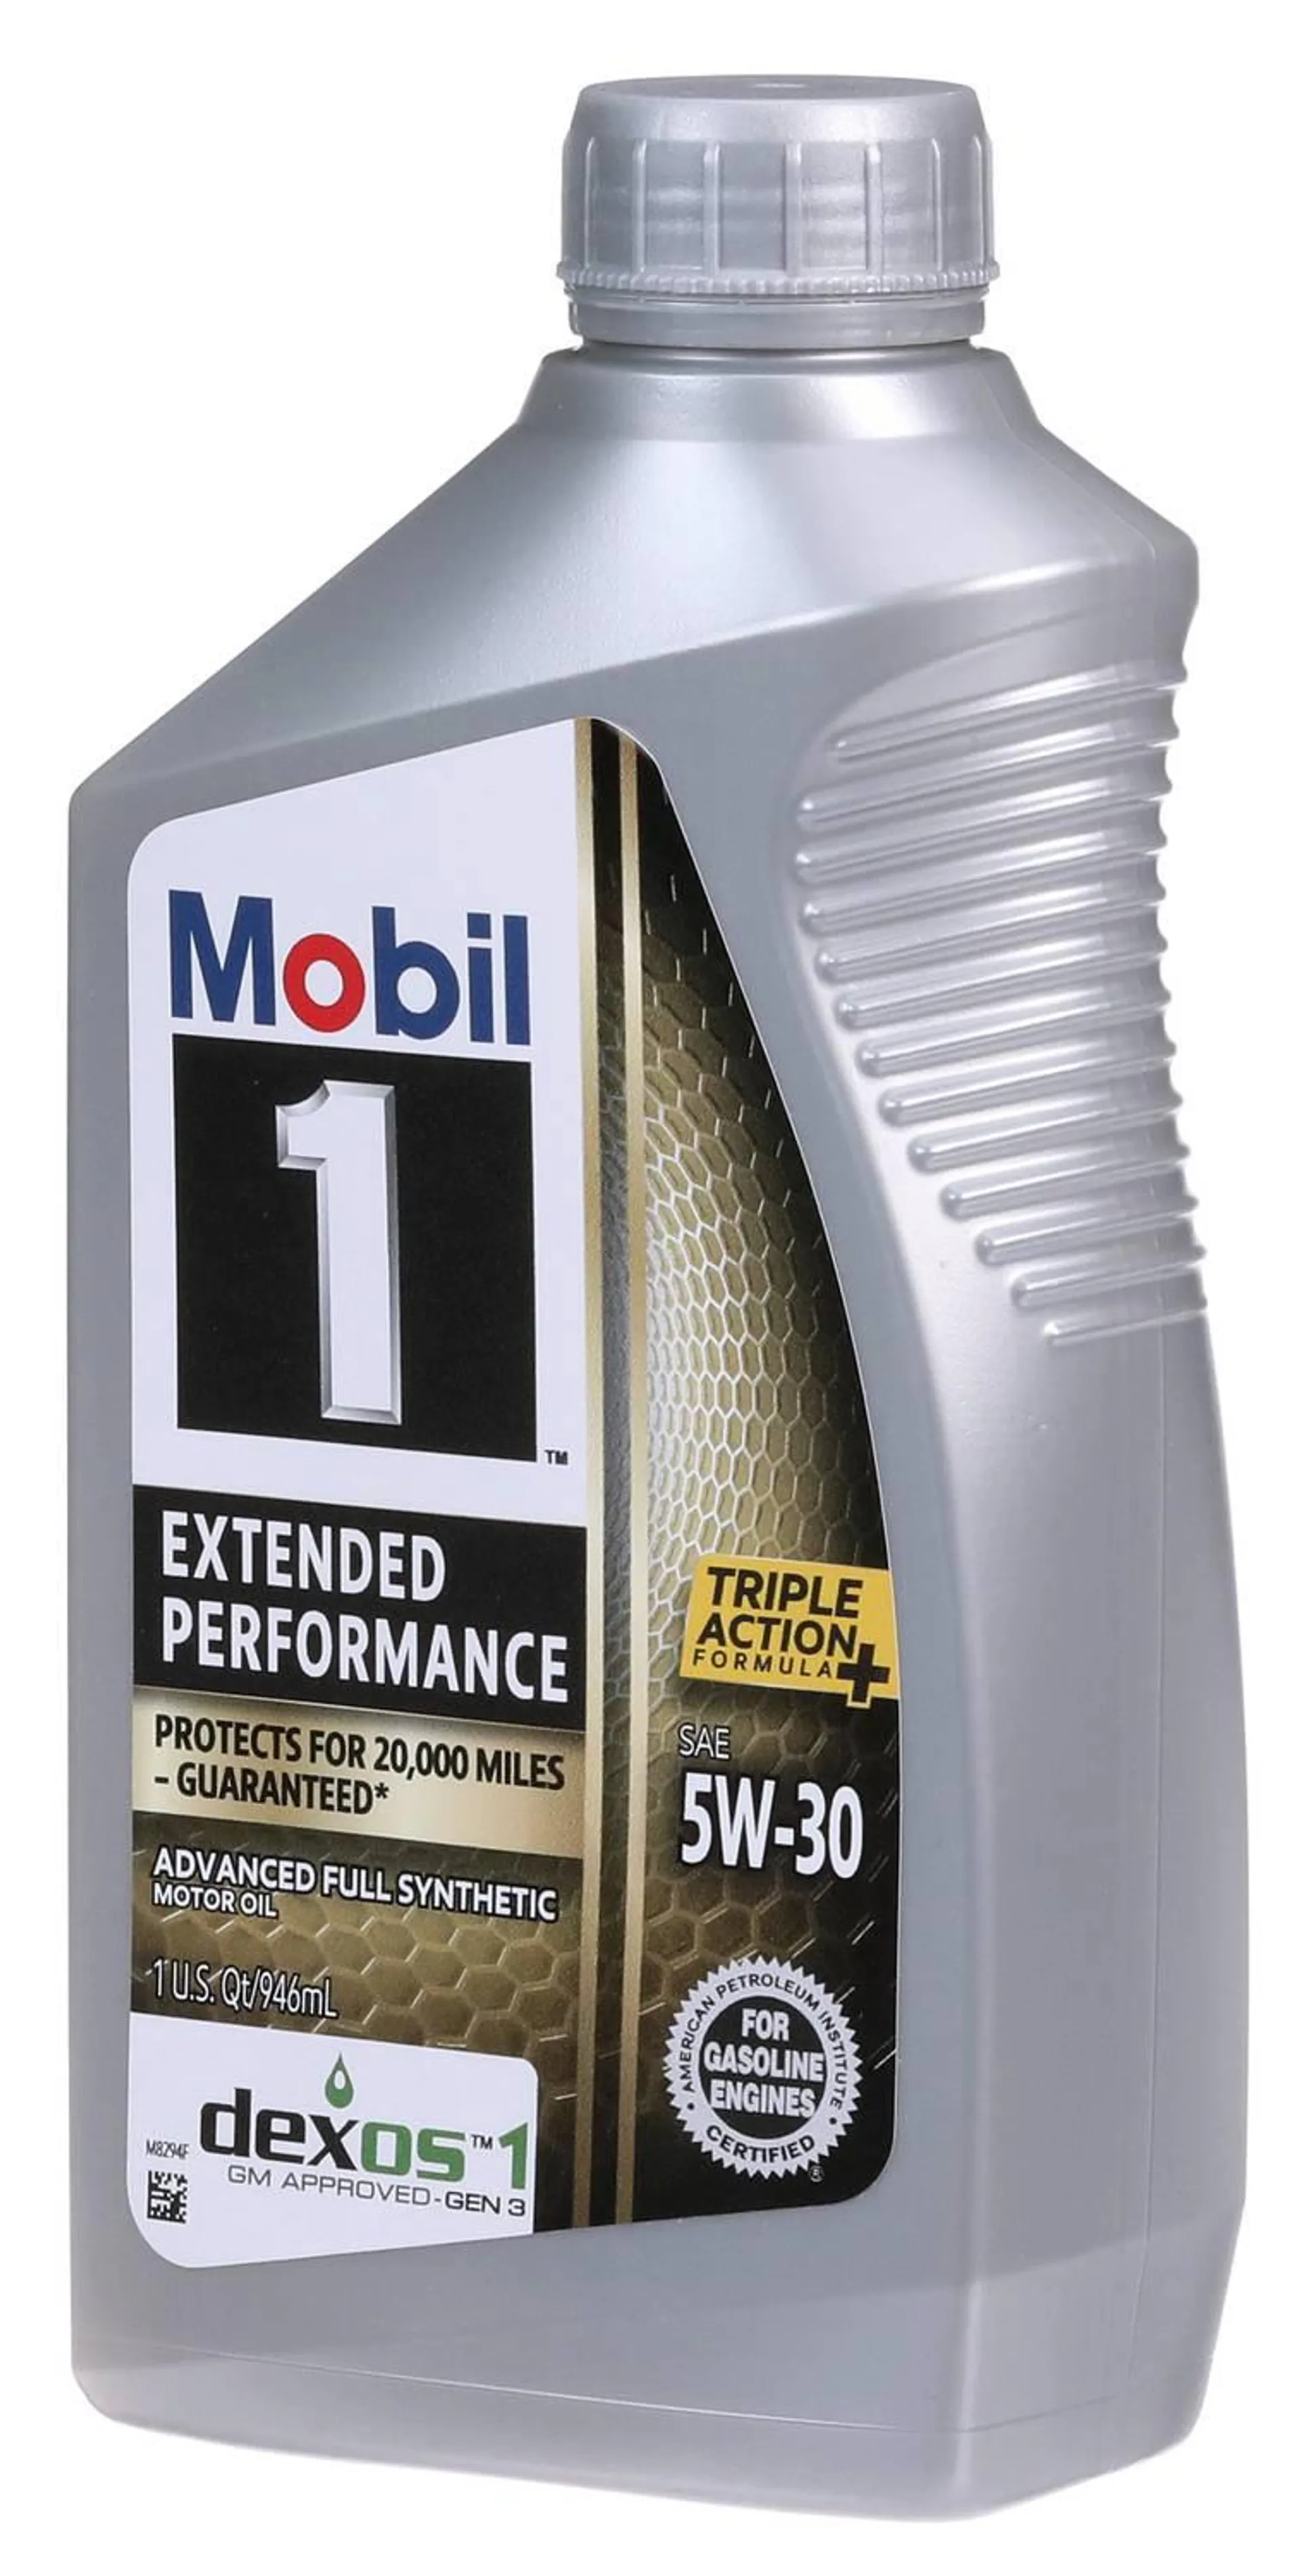 Mobil 1 Extended Performance Full Synthetic Motor Oil 5W-30 1 Quart - 1-5-30EP